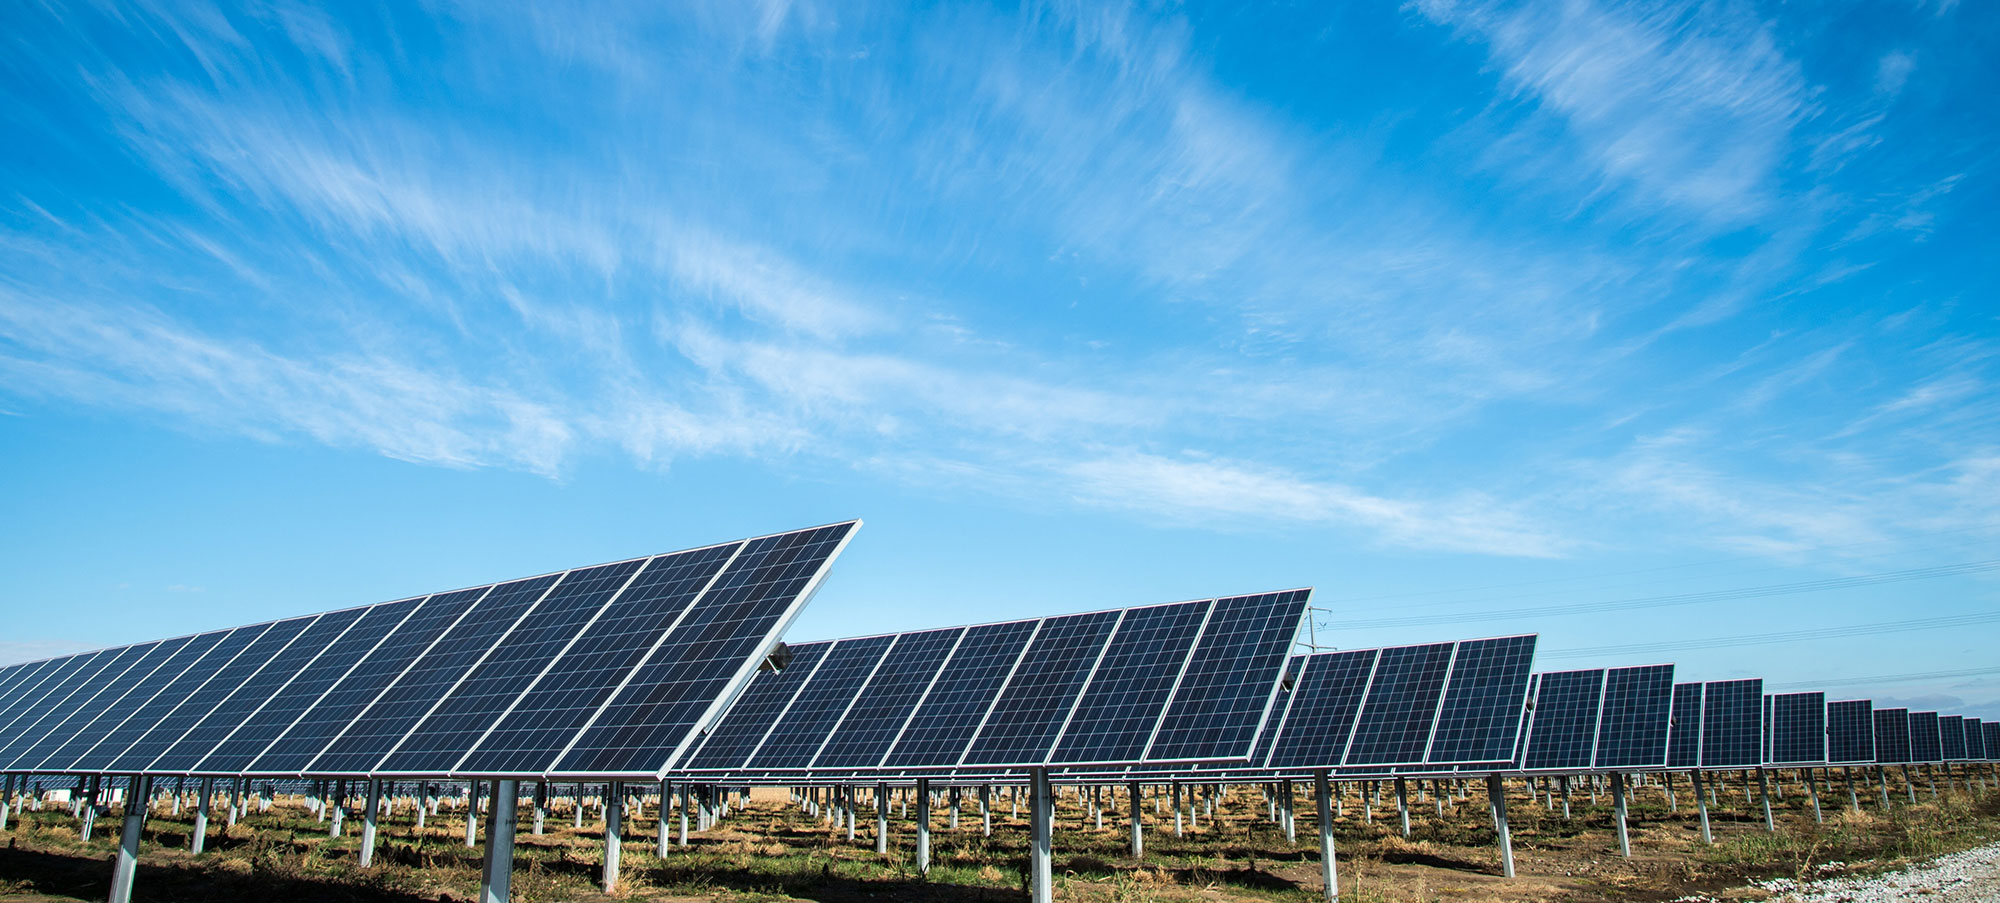 Rioma, empresa líder Instalaciones solares fotovoltaicas